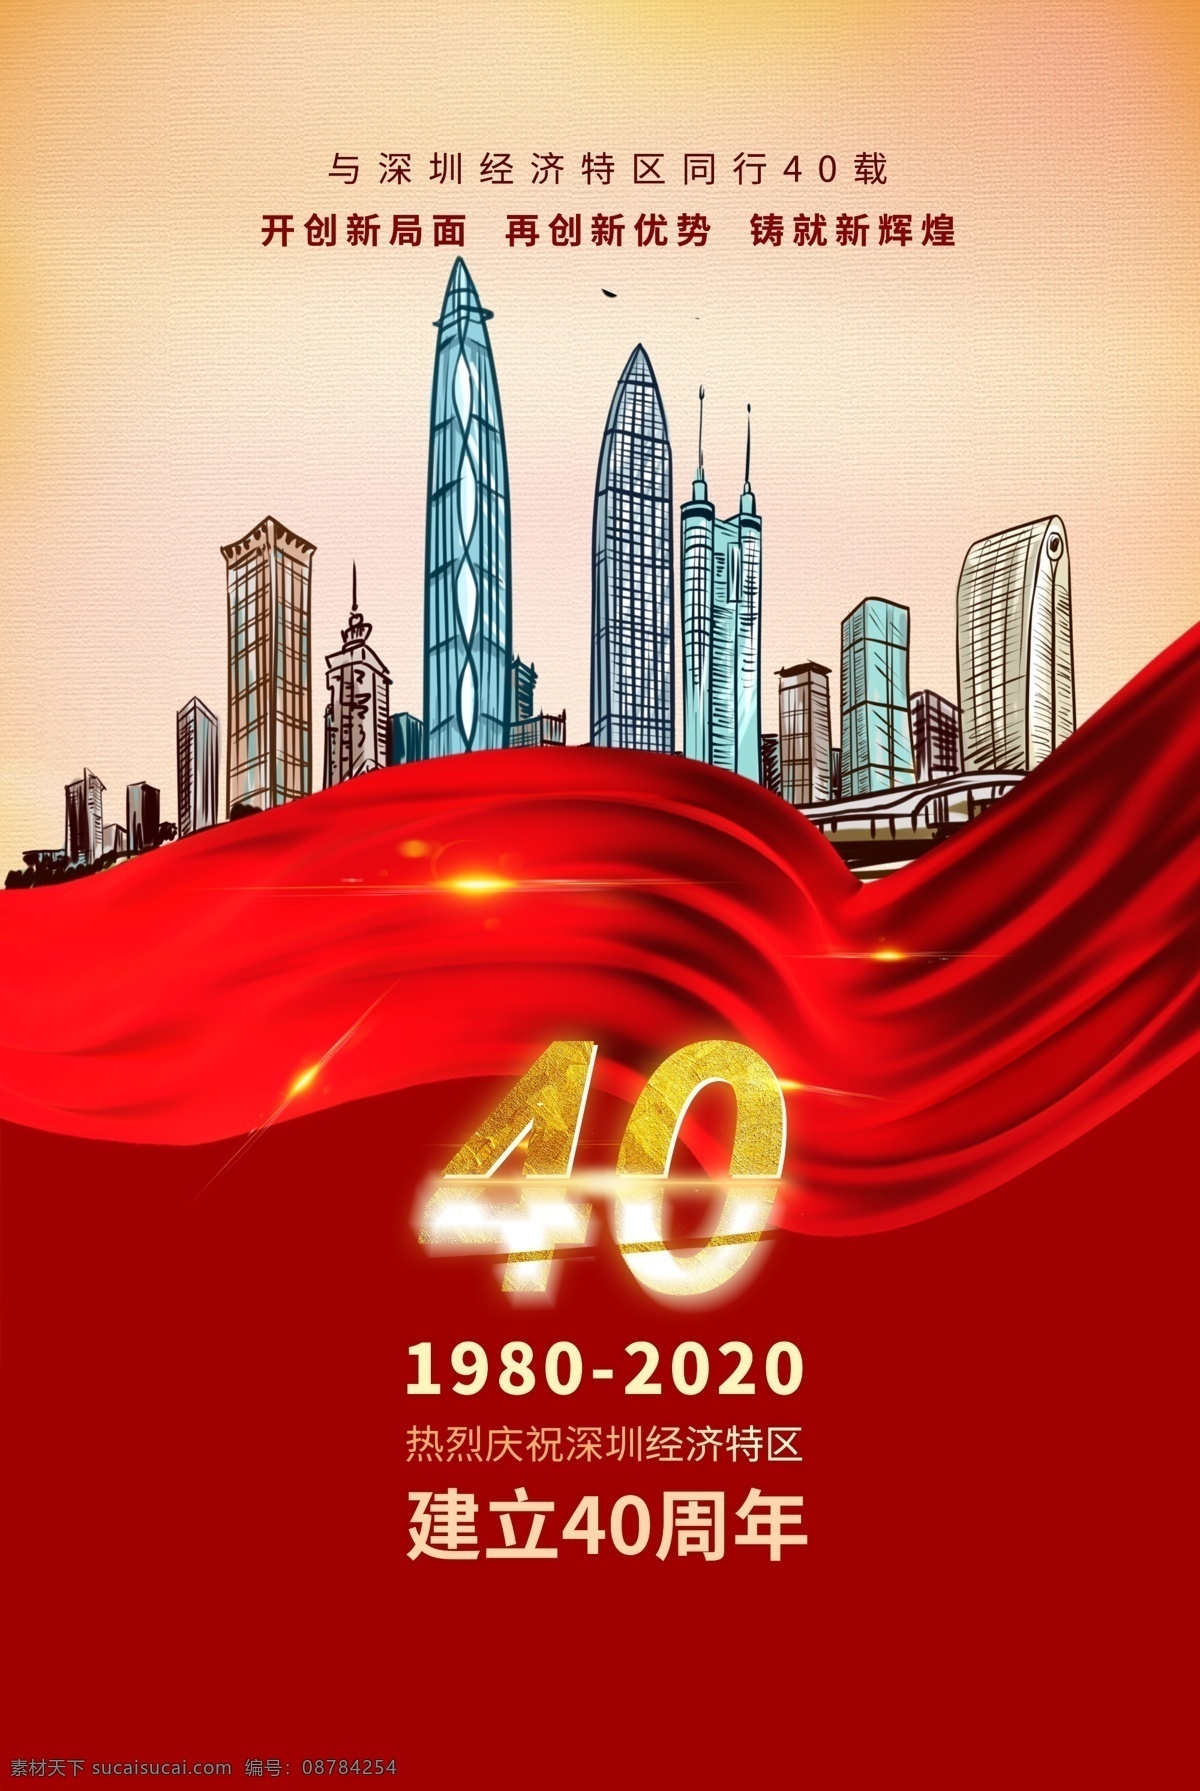 深圳40周年 40周年 40周年庆 特区40周年 深圳地标 深圳地标建筑 深圳四十周年